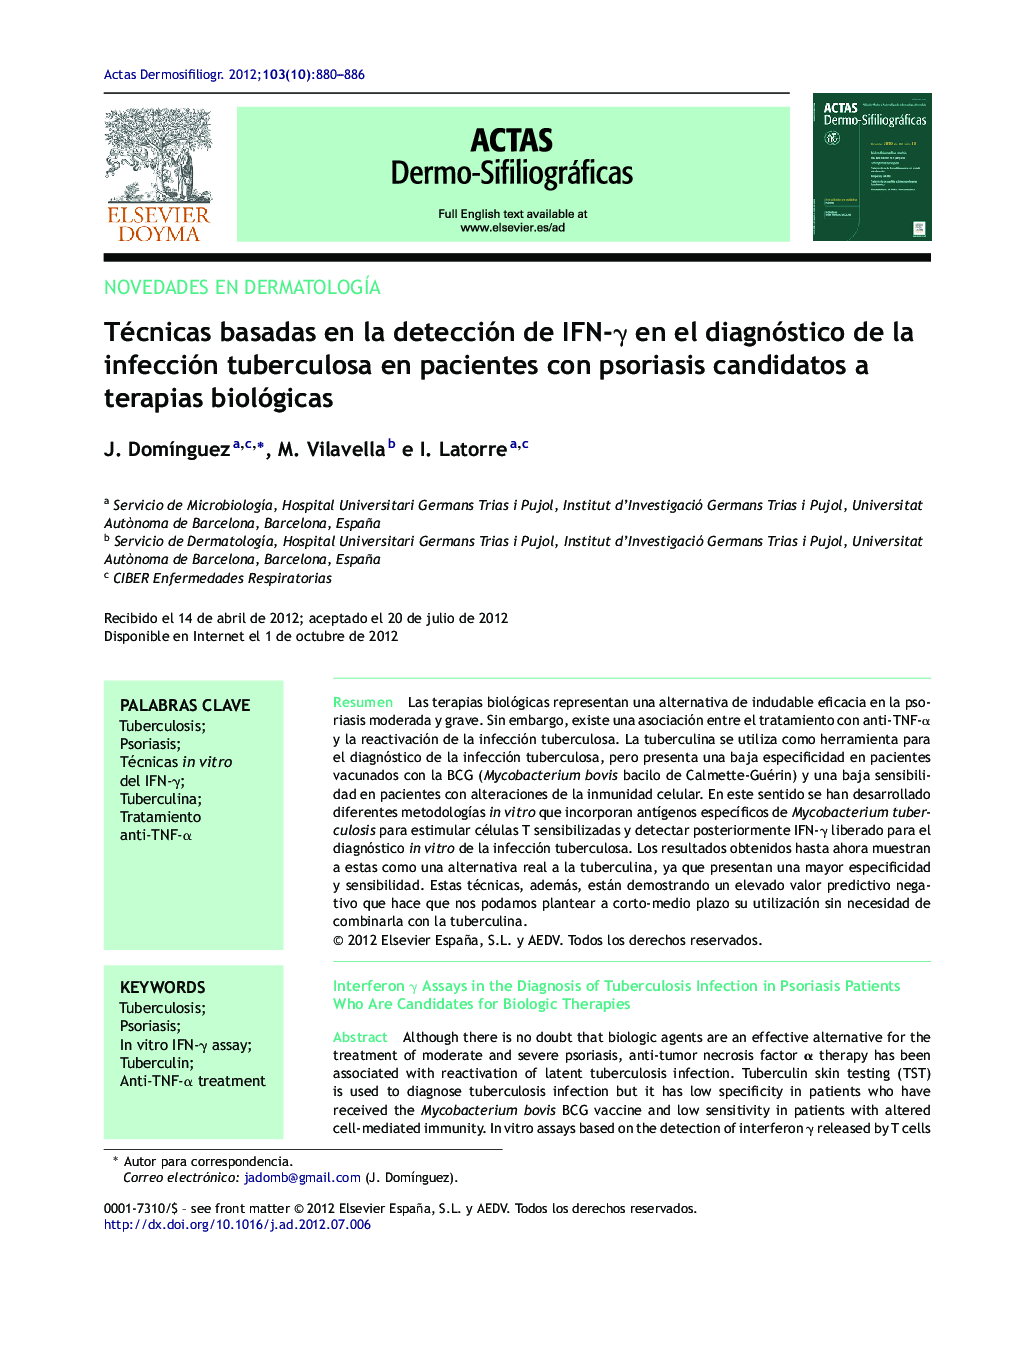 Técnicas basadas en la detección de IFN-γ en el diagnóstico de la infección tuberculosa en pacientes con psoriasis candidatos a terapias biológicas